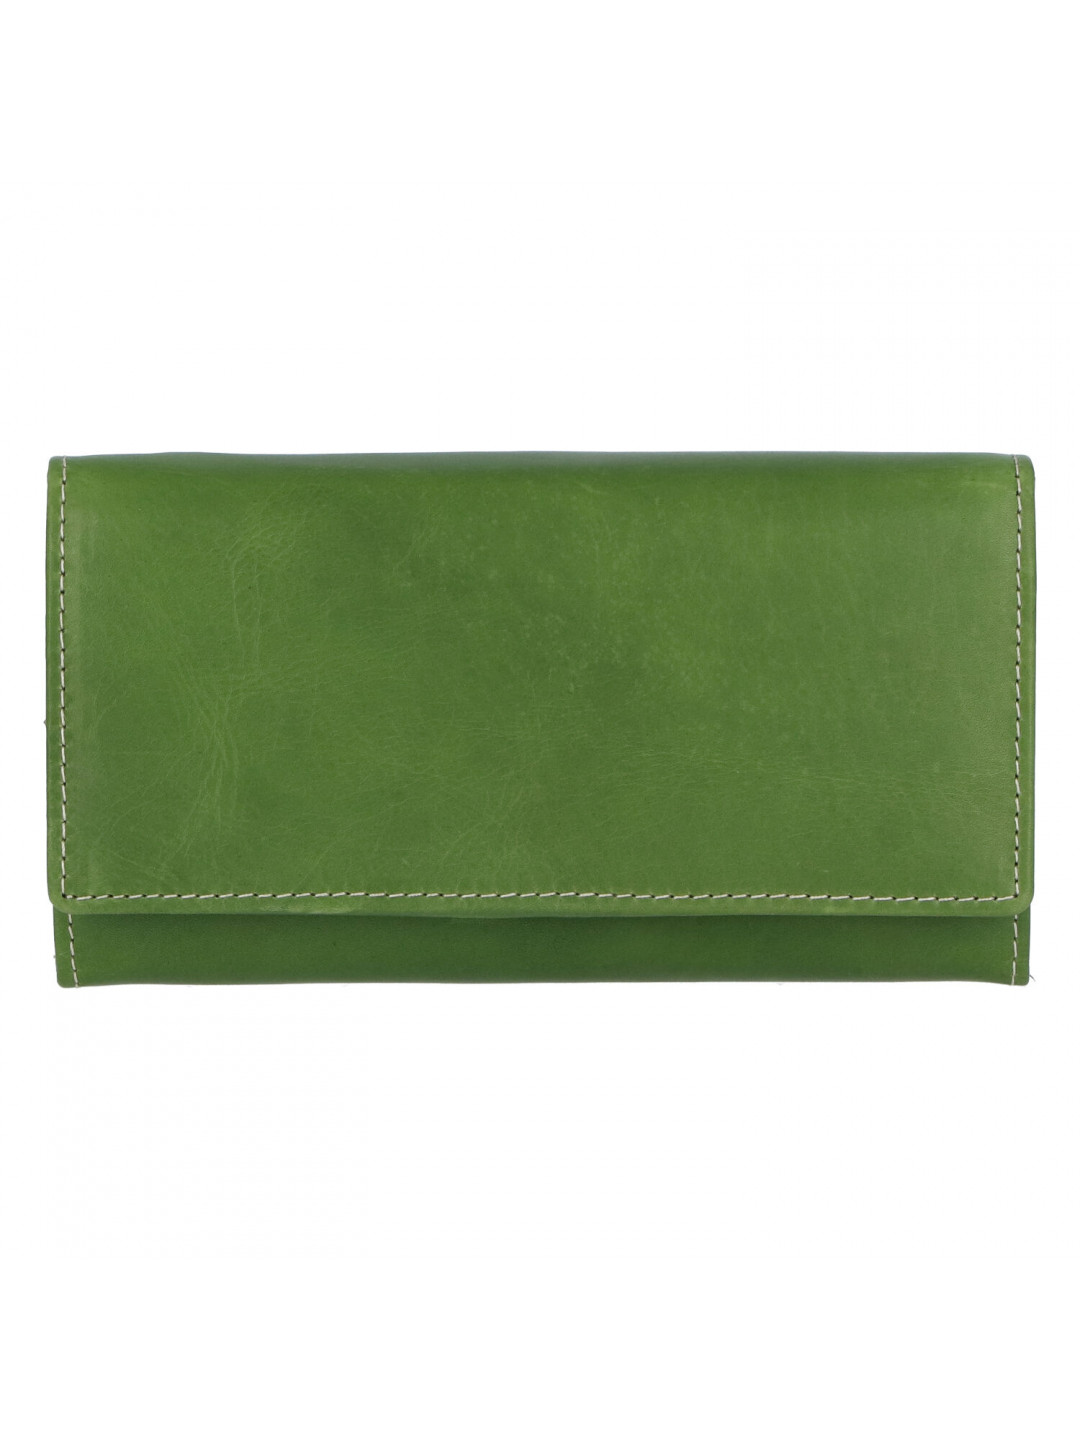 Dámská kožená peněženka zelená – Tomas Kalasia